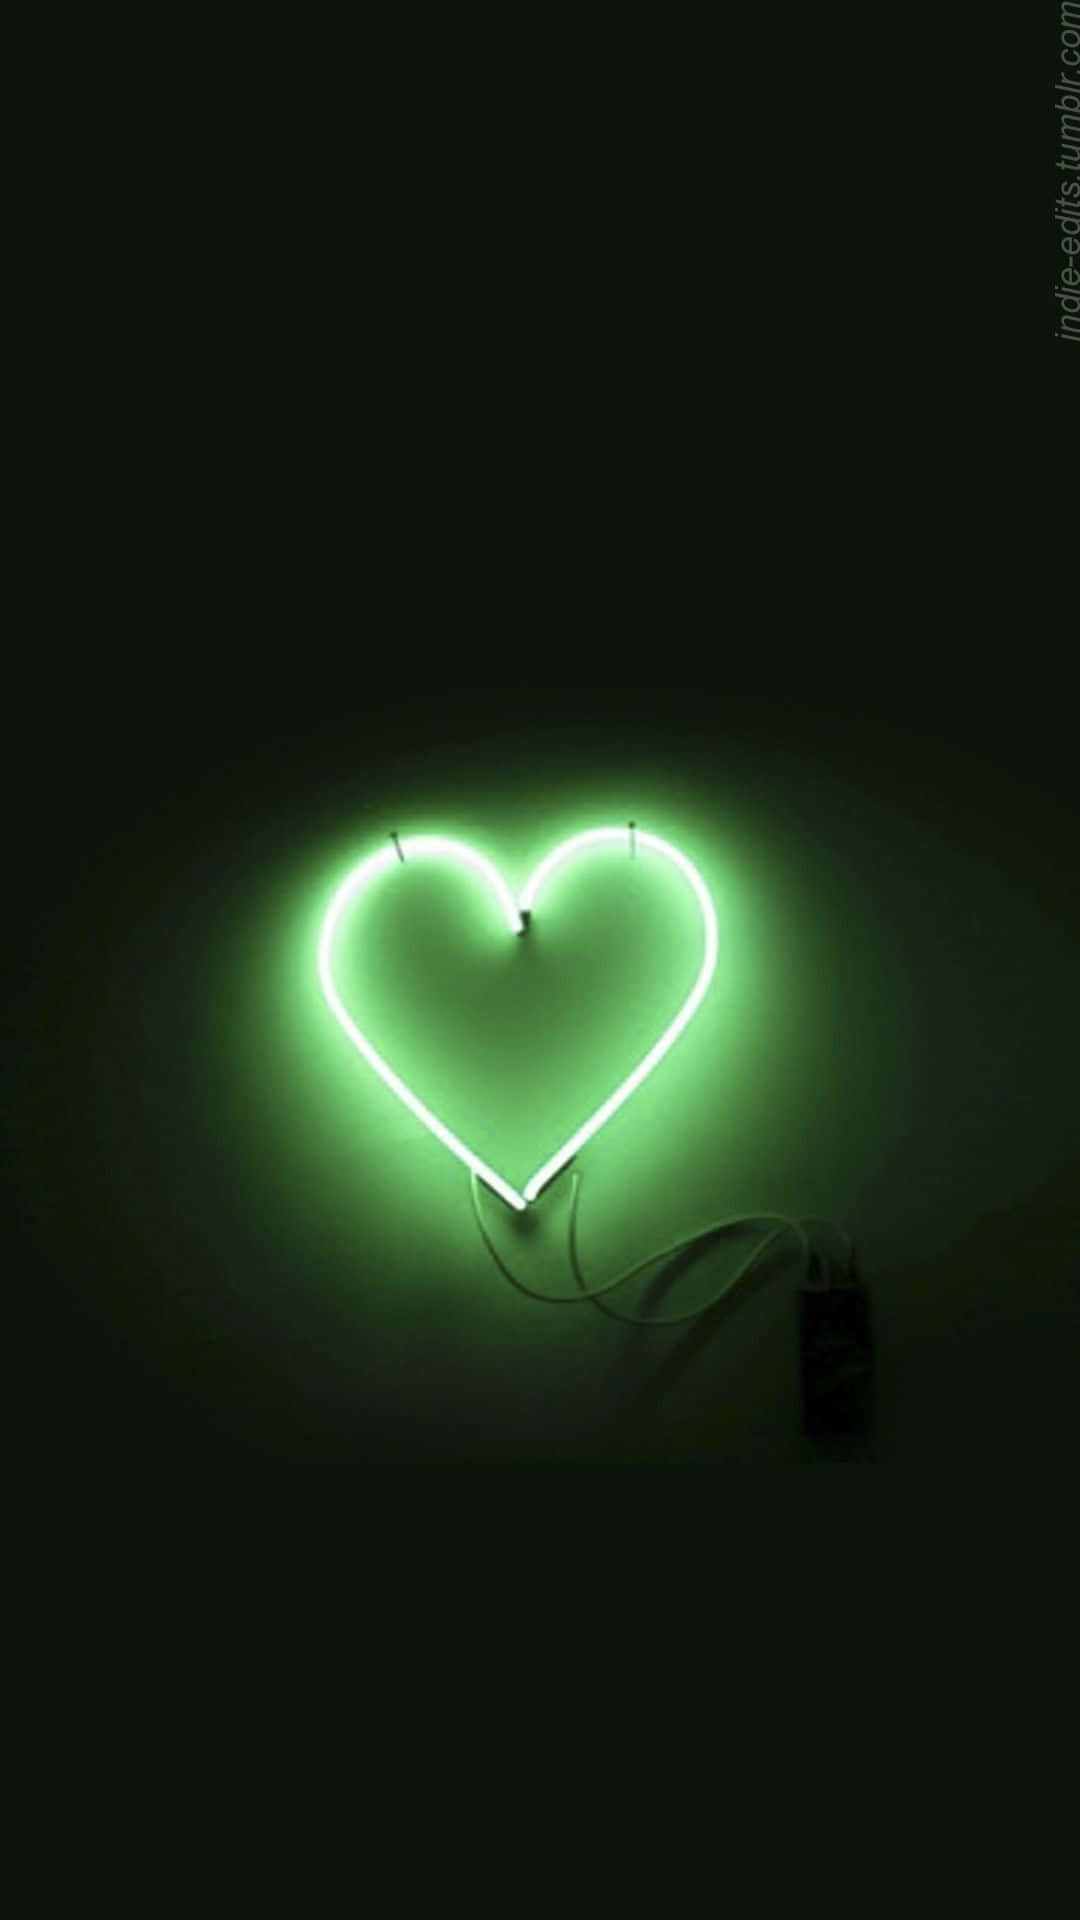 Heart-shaped Green Led Light Wallpaper